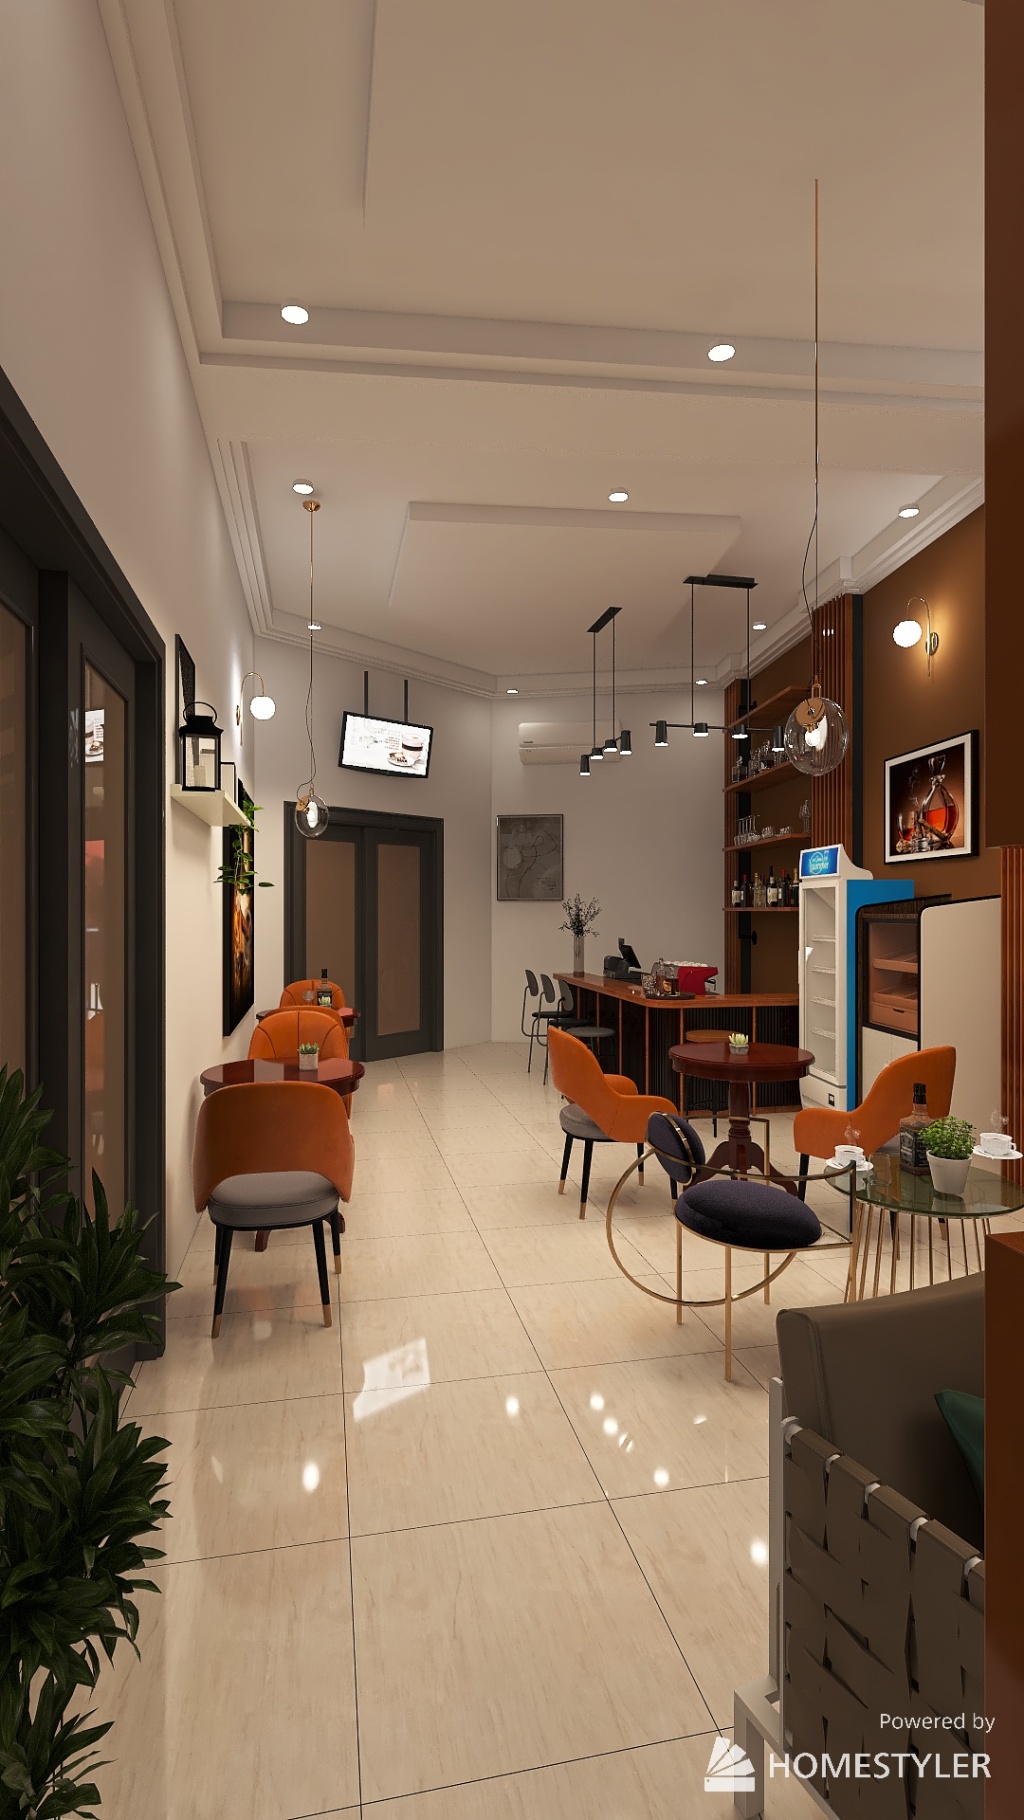 le Café Corsé 3d design renderings